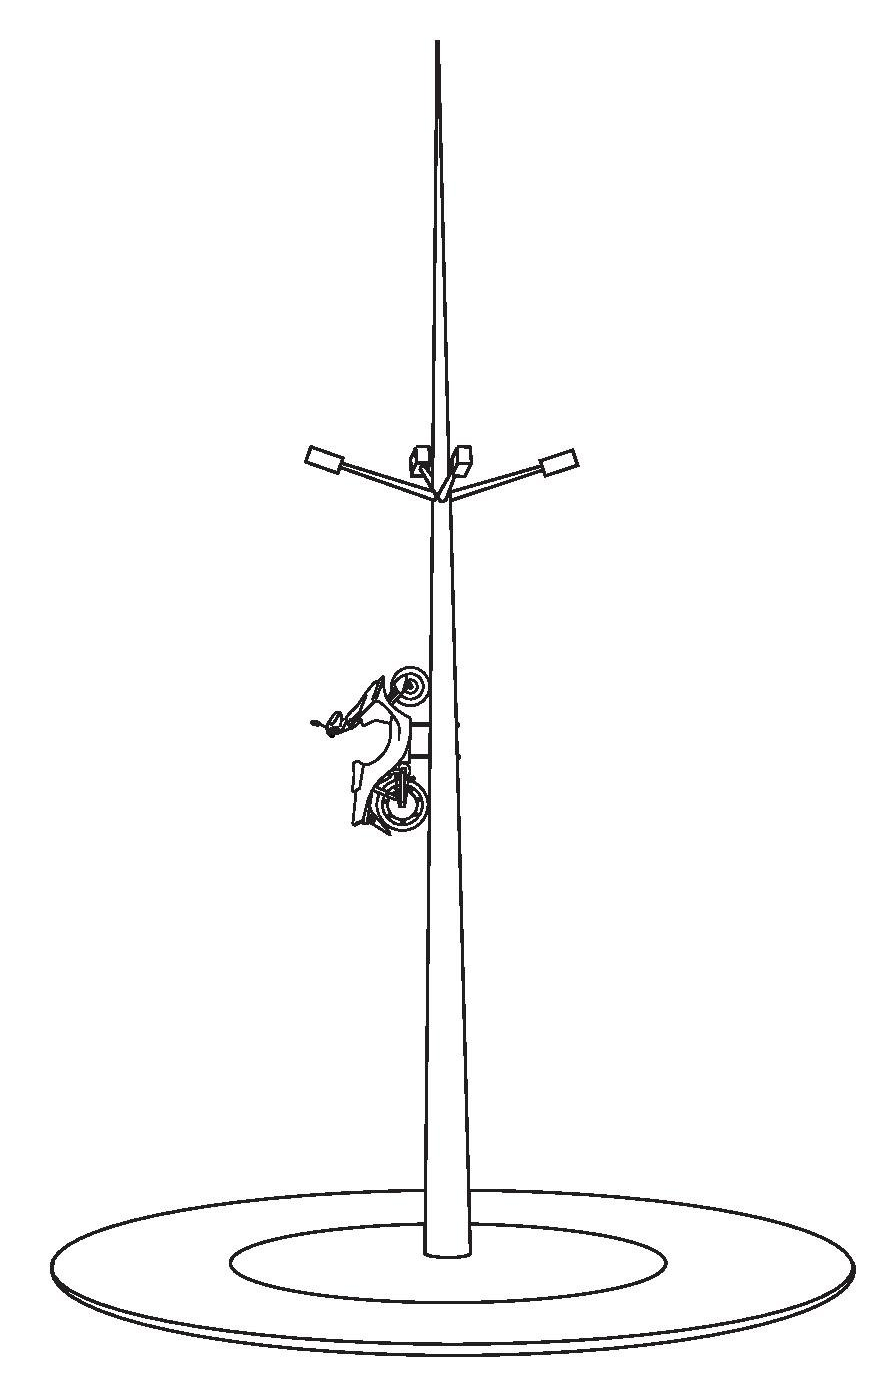 Mobilec auf einem Mast